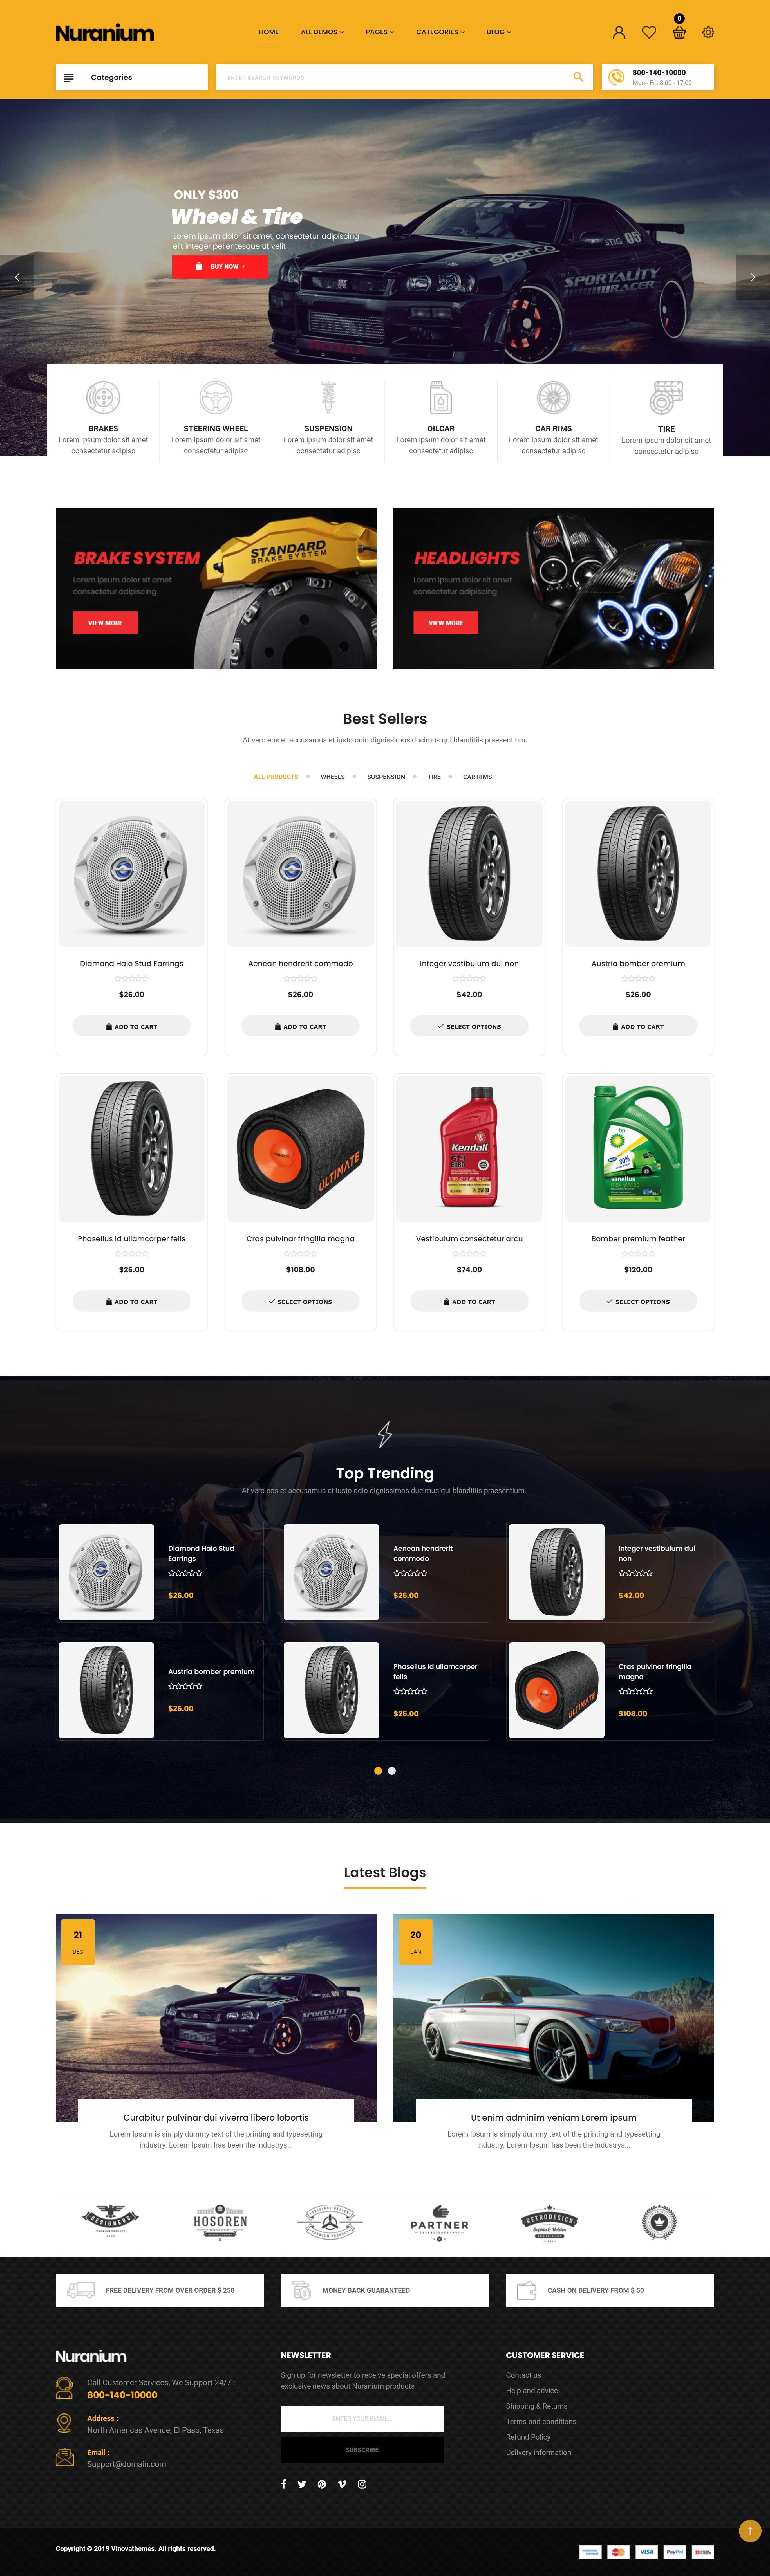 Mẫu thiết kế website showroom bán Phụ tùng, đồ chơi ô tô 04 demo_vinovathemes_com/nuranium1/en/?home=home_1